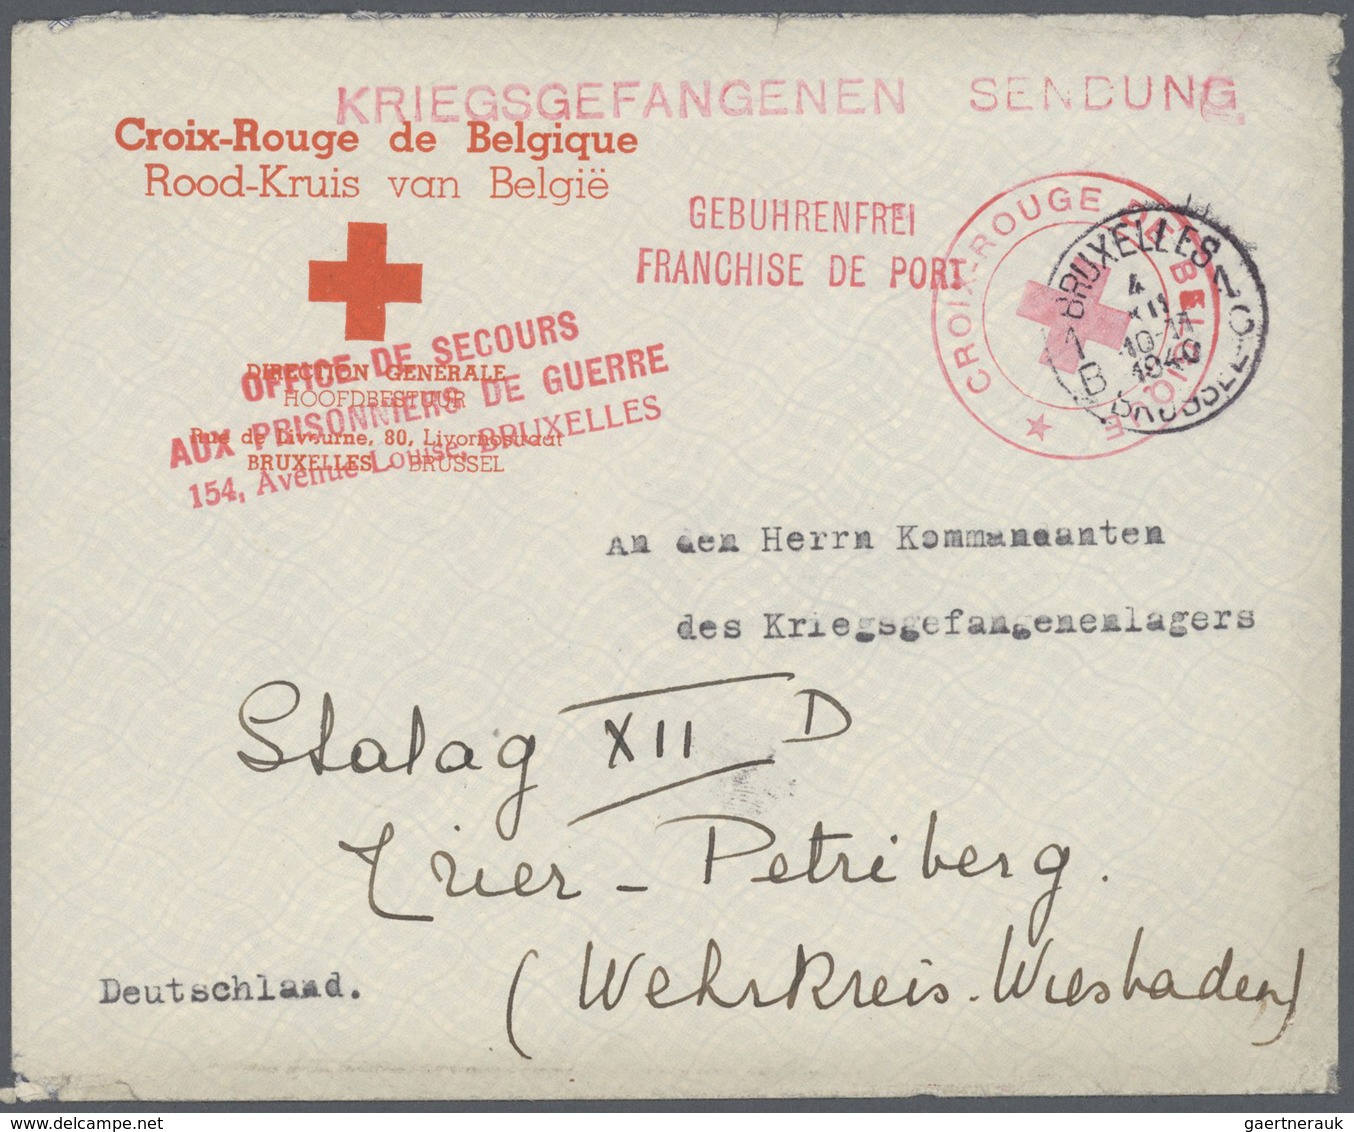 26108 Belgien: 1916 - 1964, umfangreiche Sammlung von ca. 320 Belegen, zumeist frankierte Briefe und einig